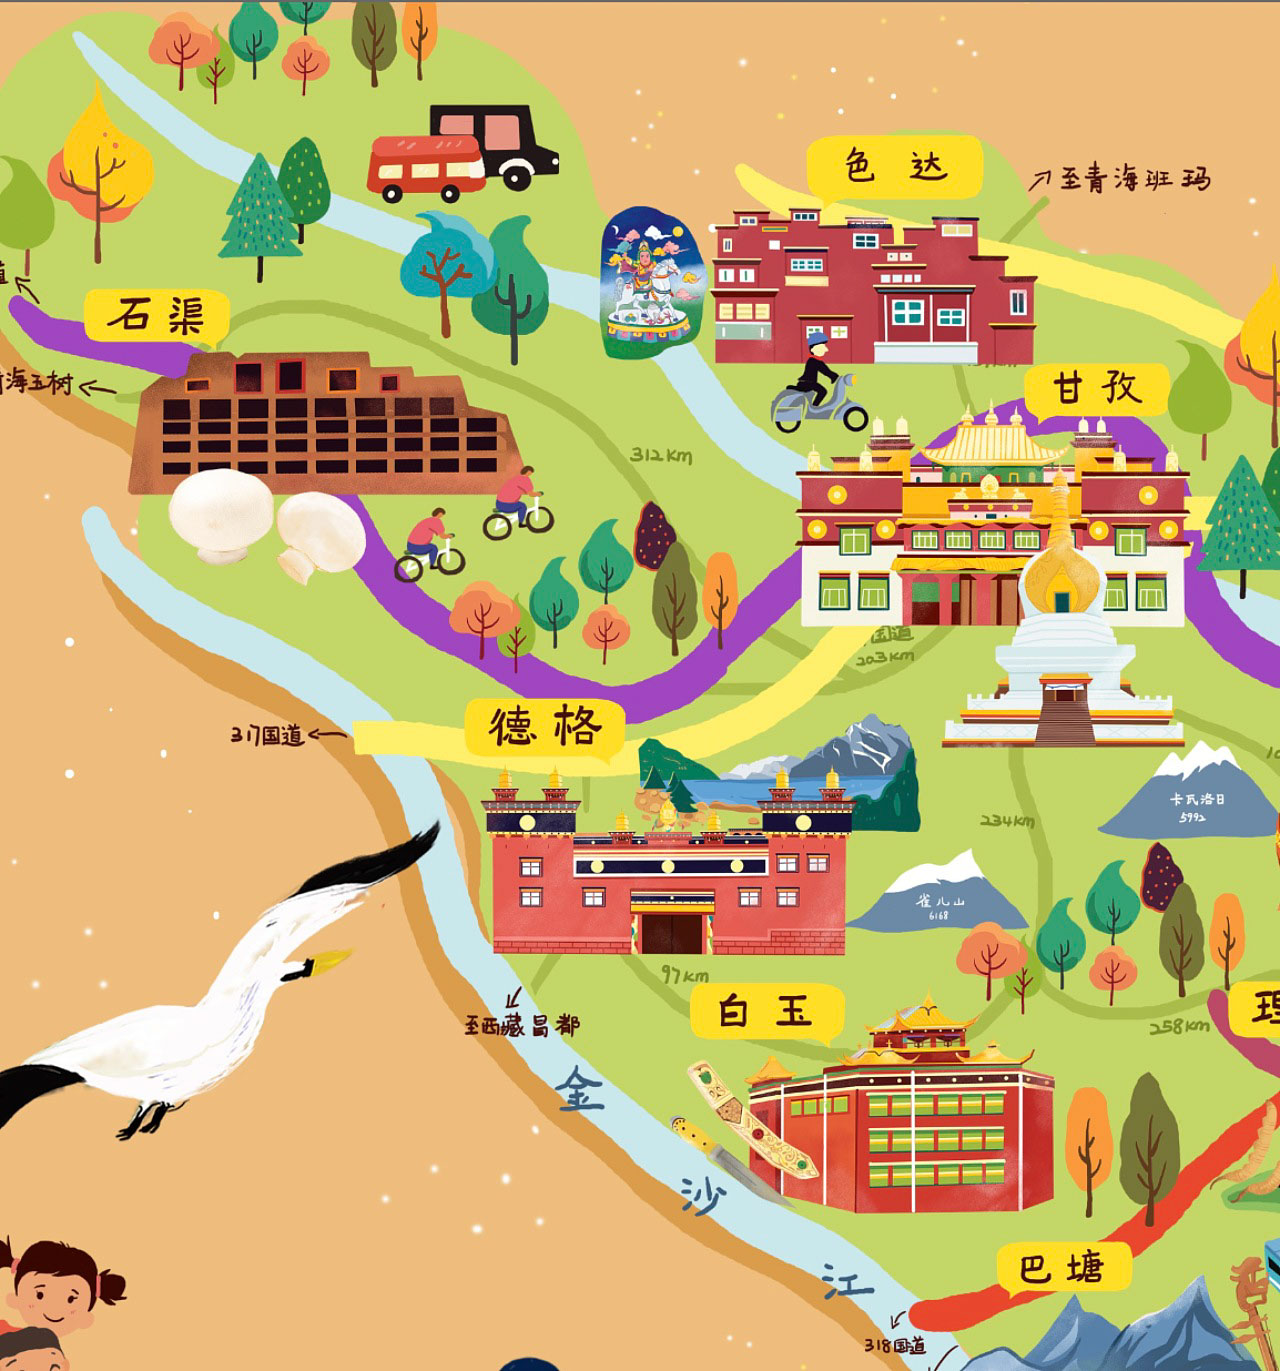 乌烈镇手绘地图景区的文化宝库